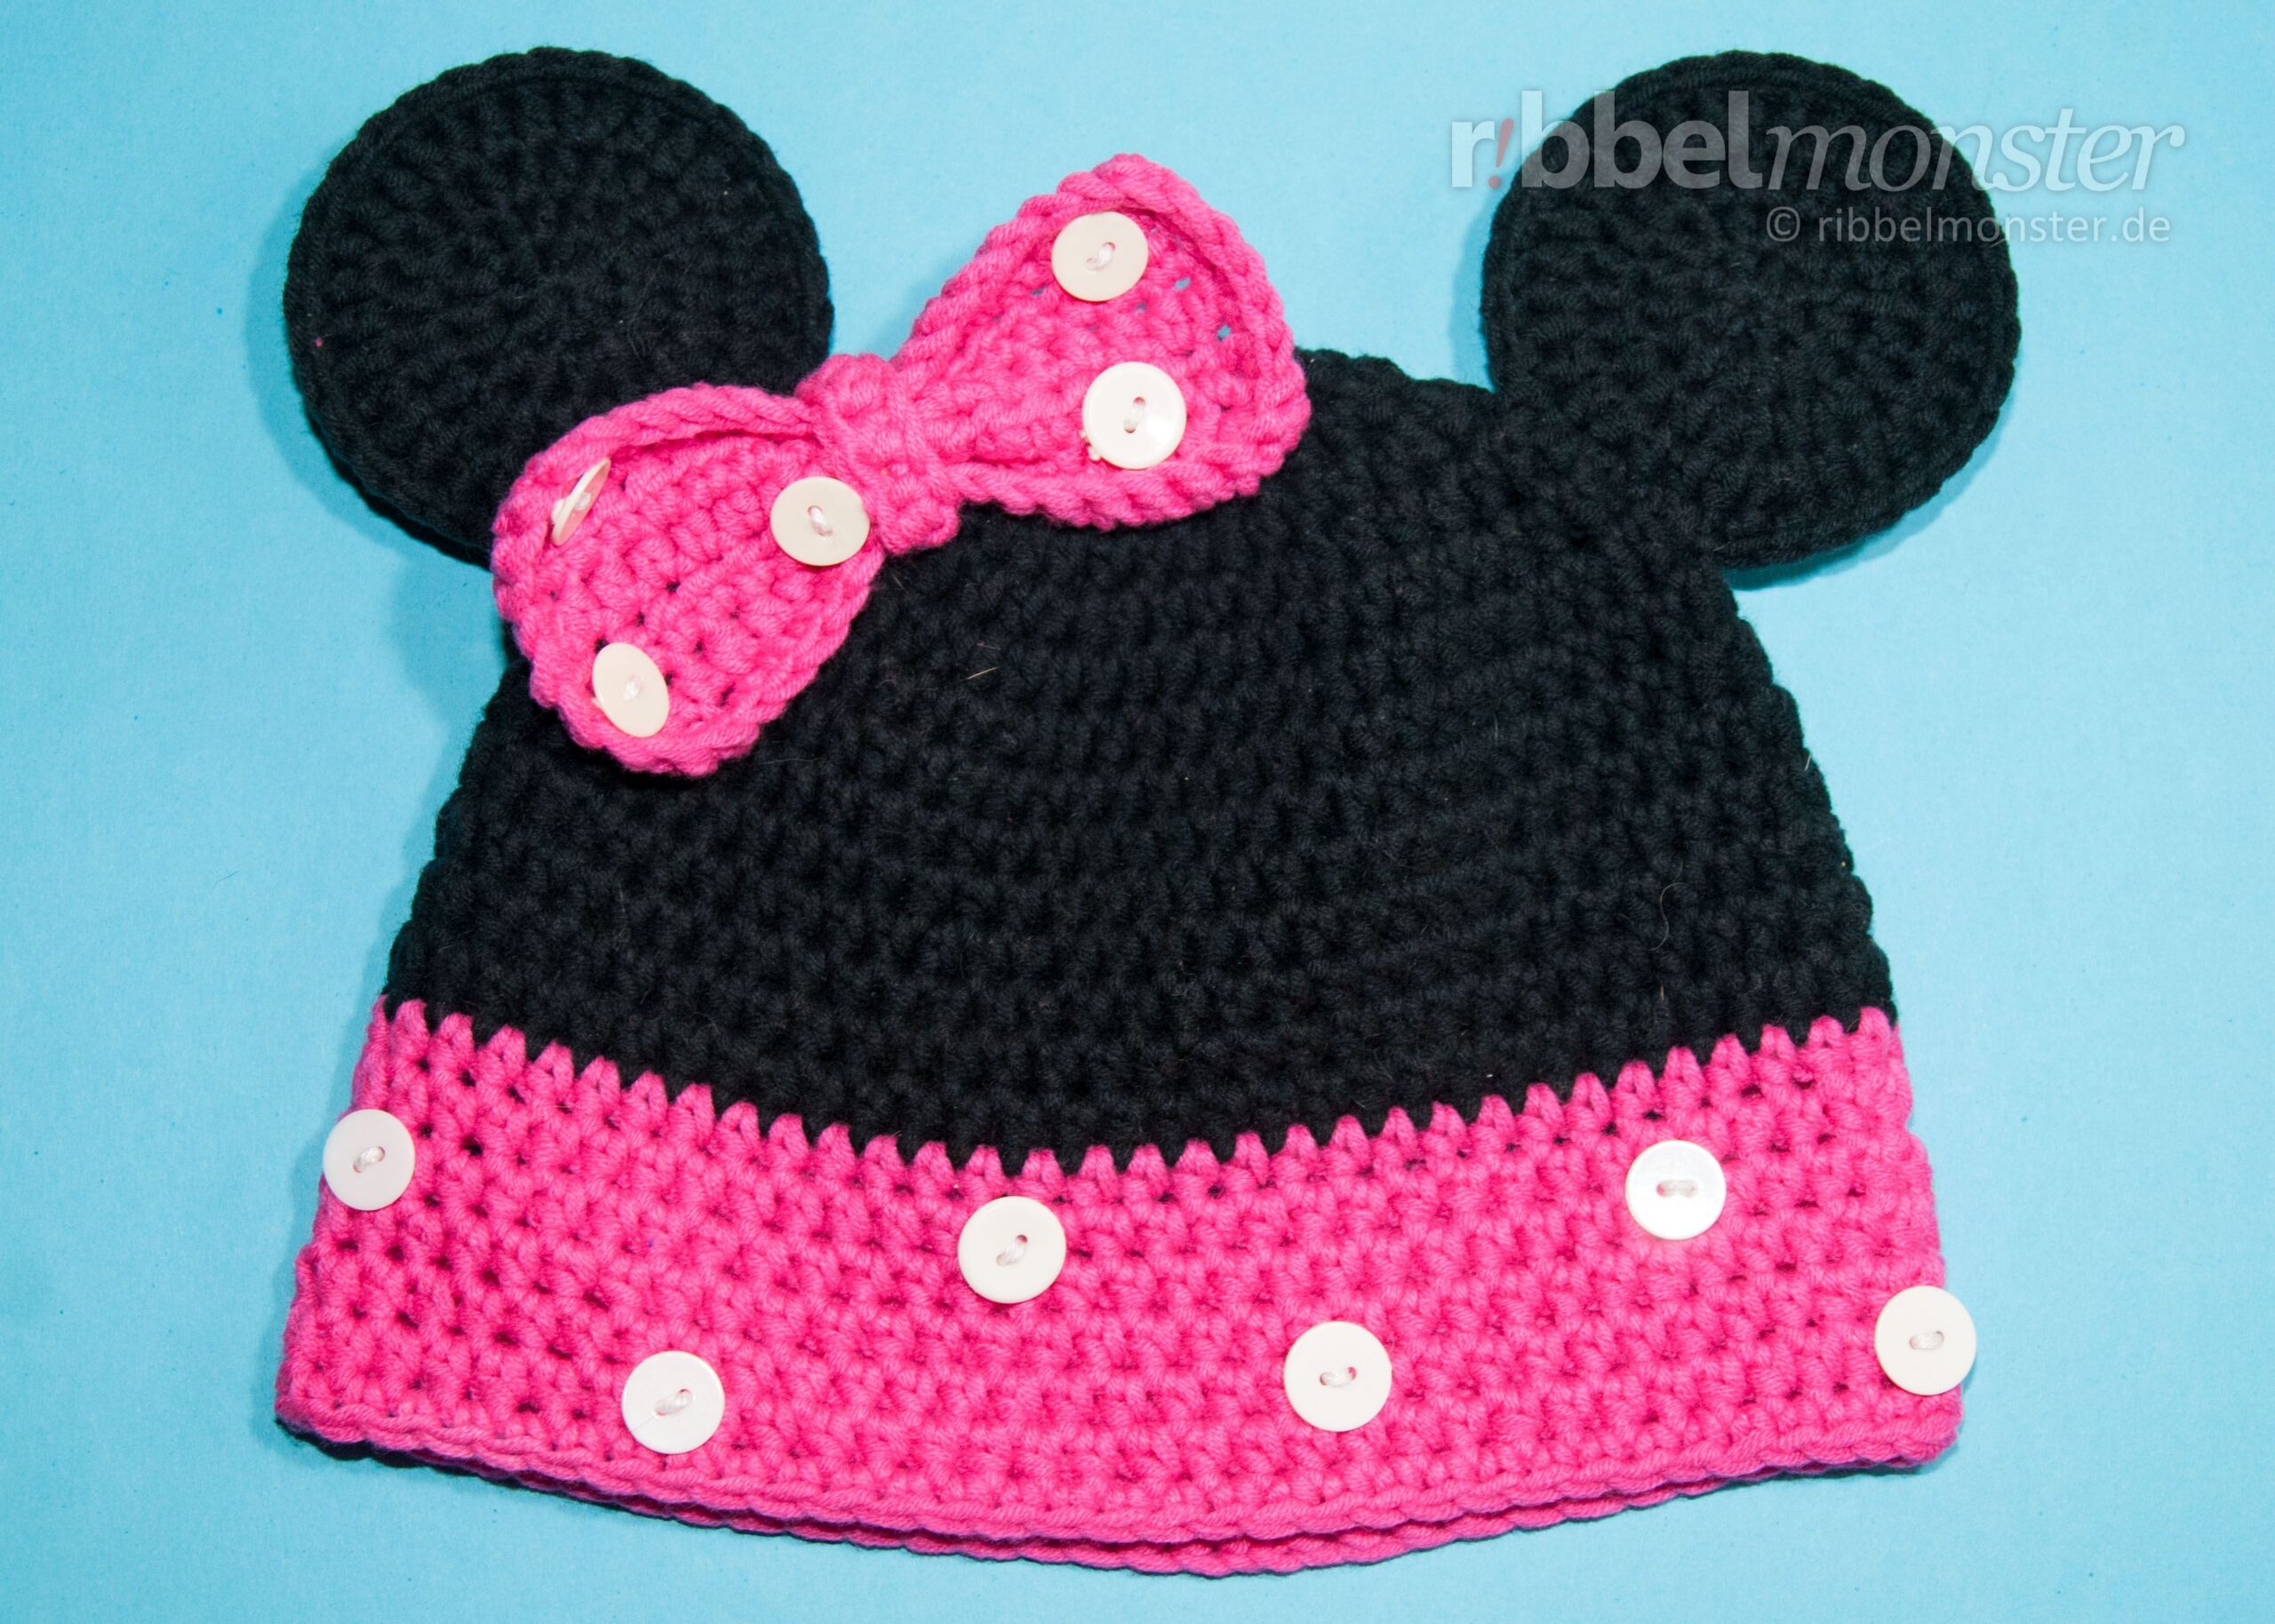 Crochet Hat – Crochet “Minnie” Mouse Hat